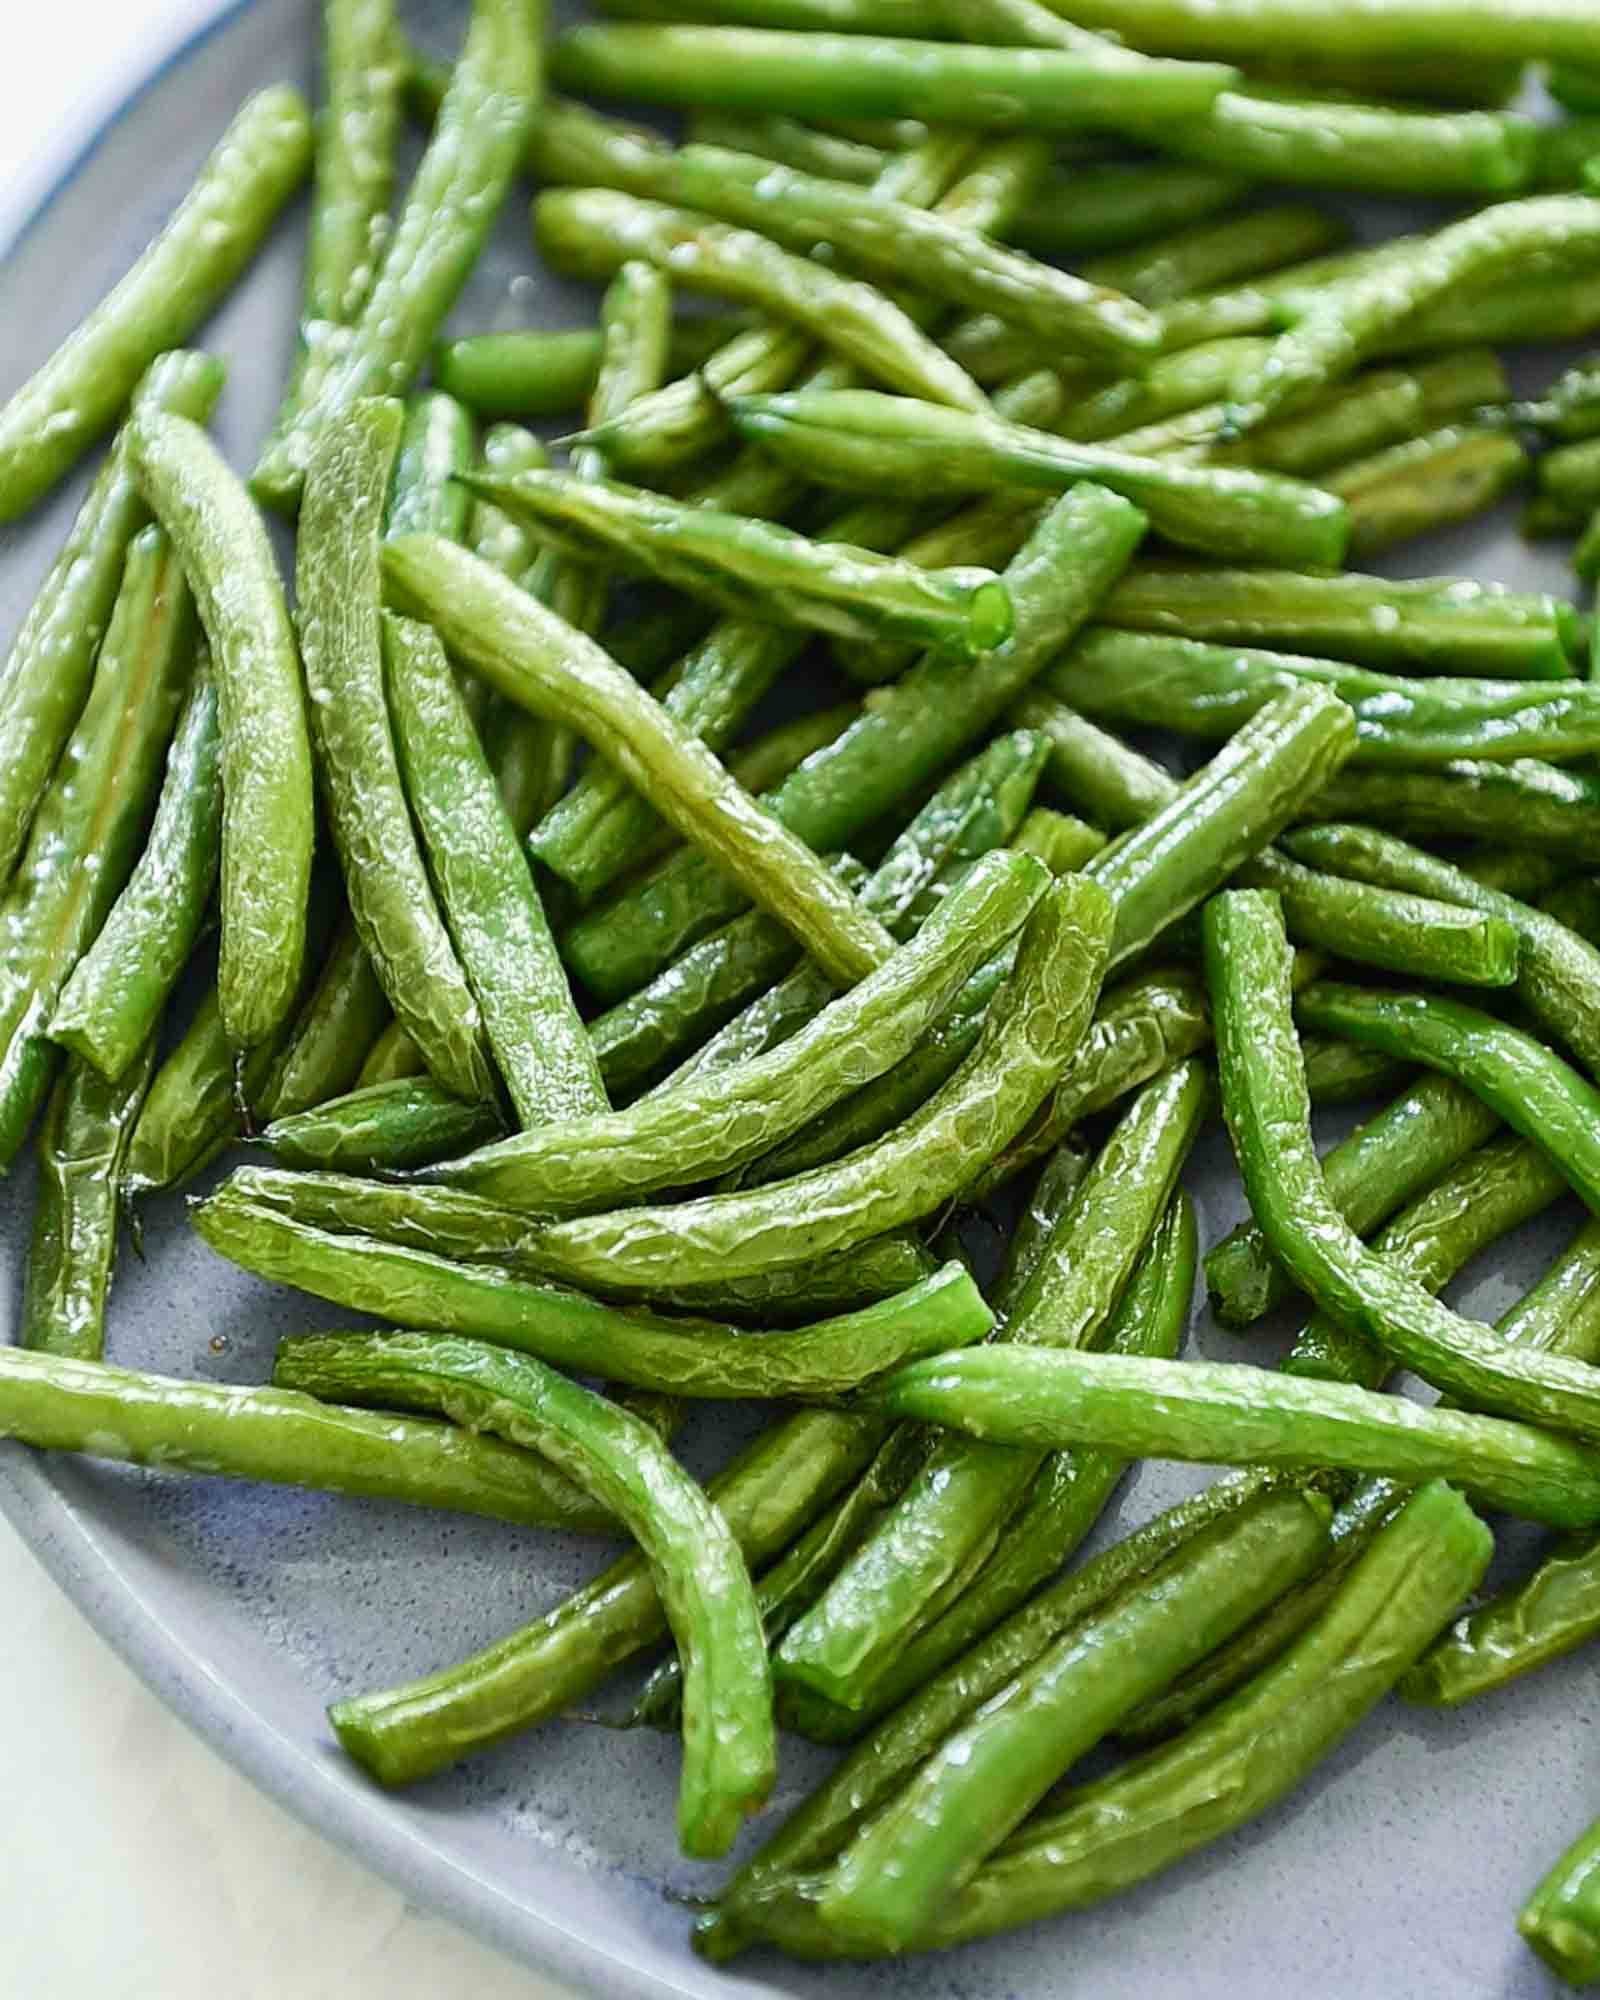 Air-fried green beans